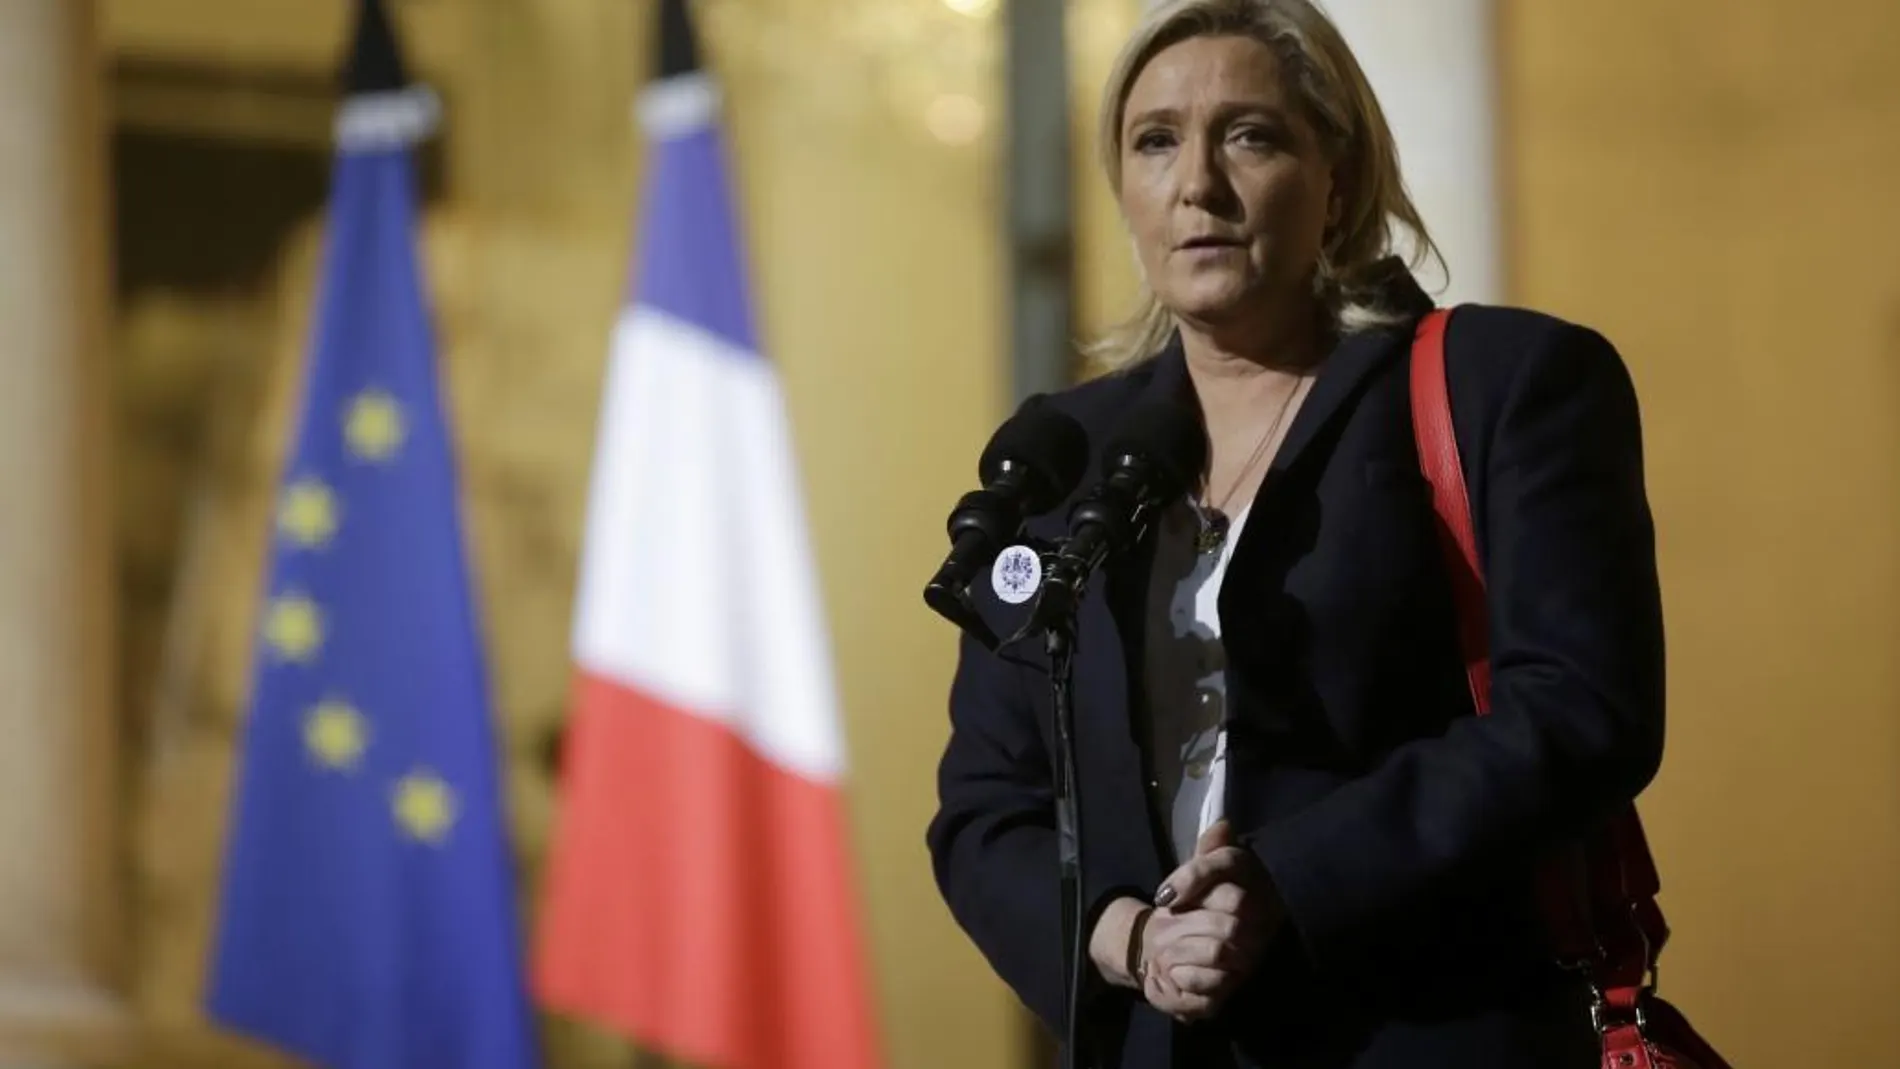 La líder del Frente Macional, Marine Le Pen